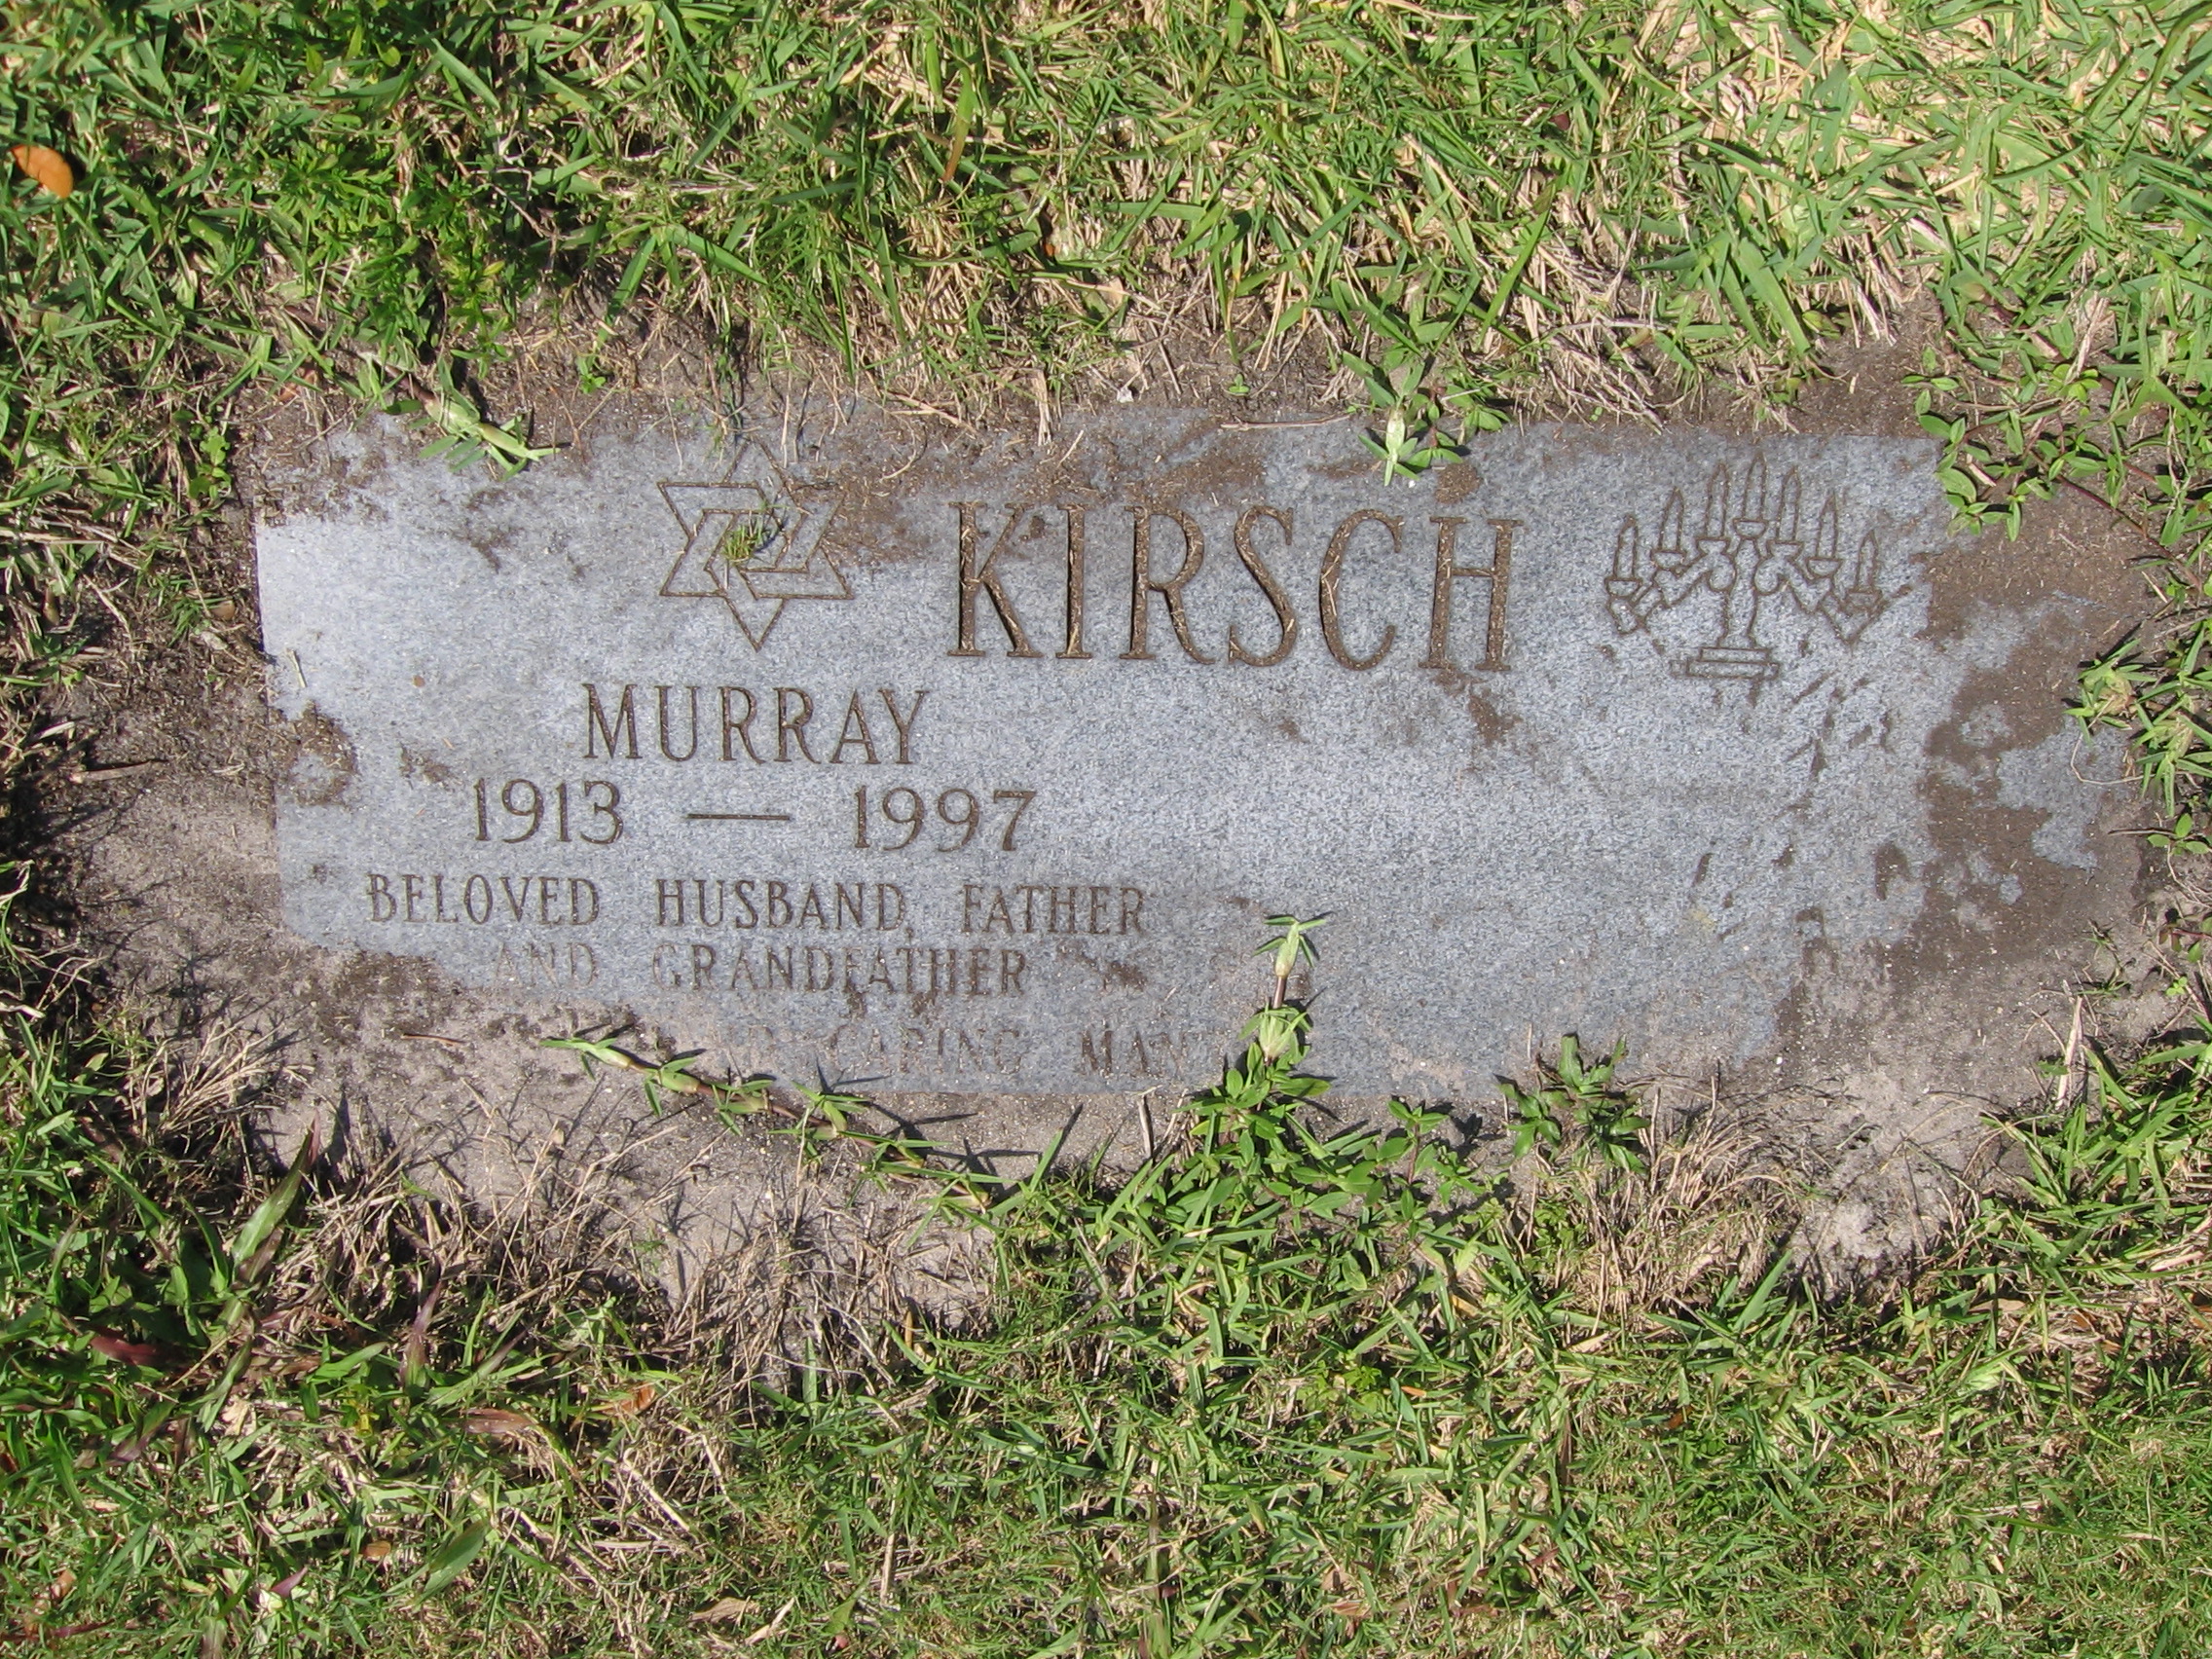 Murray Kirsch